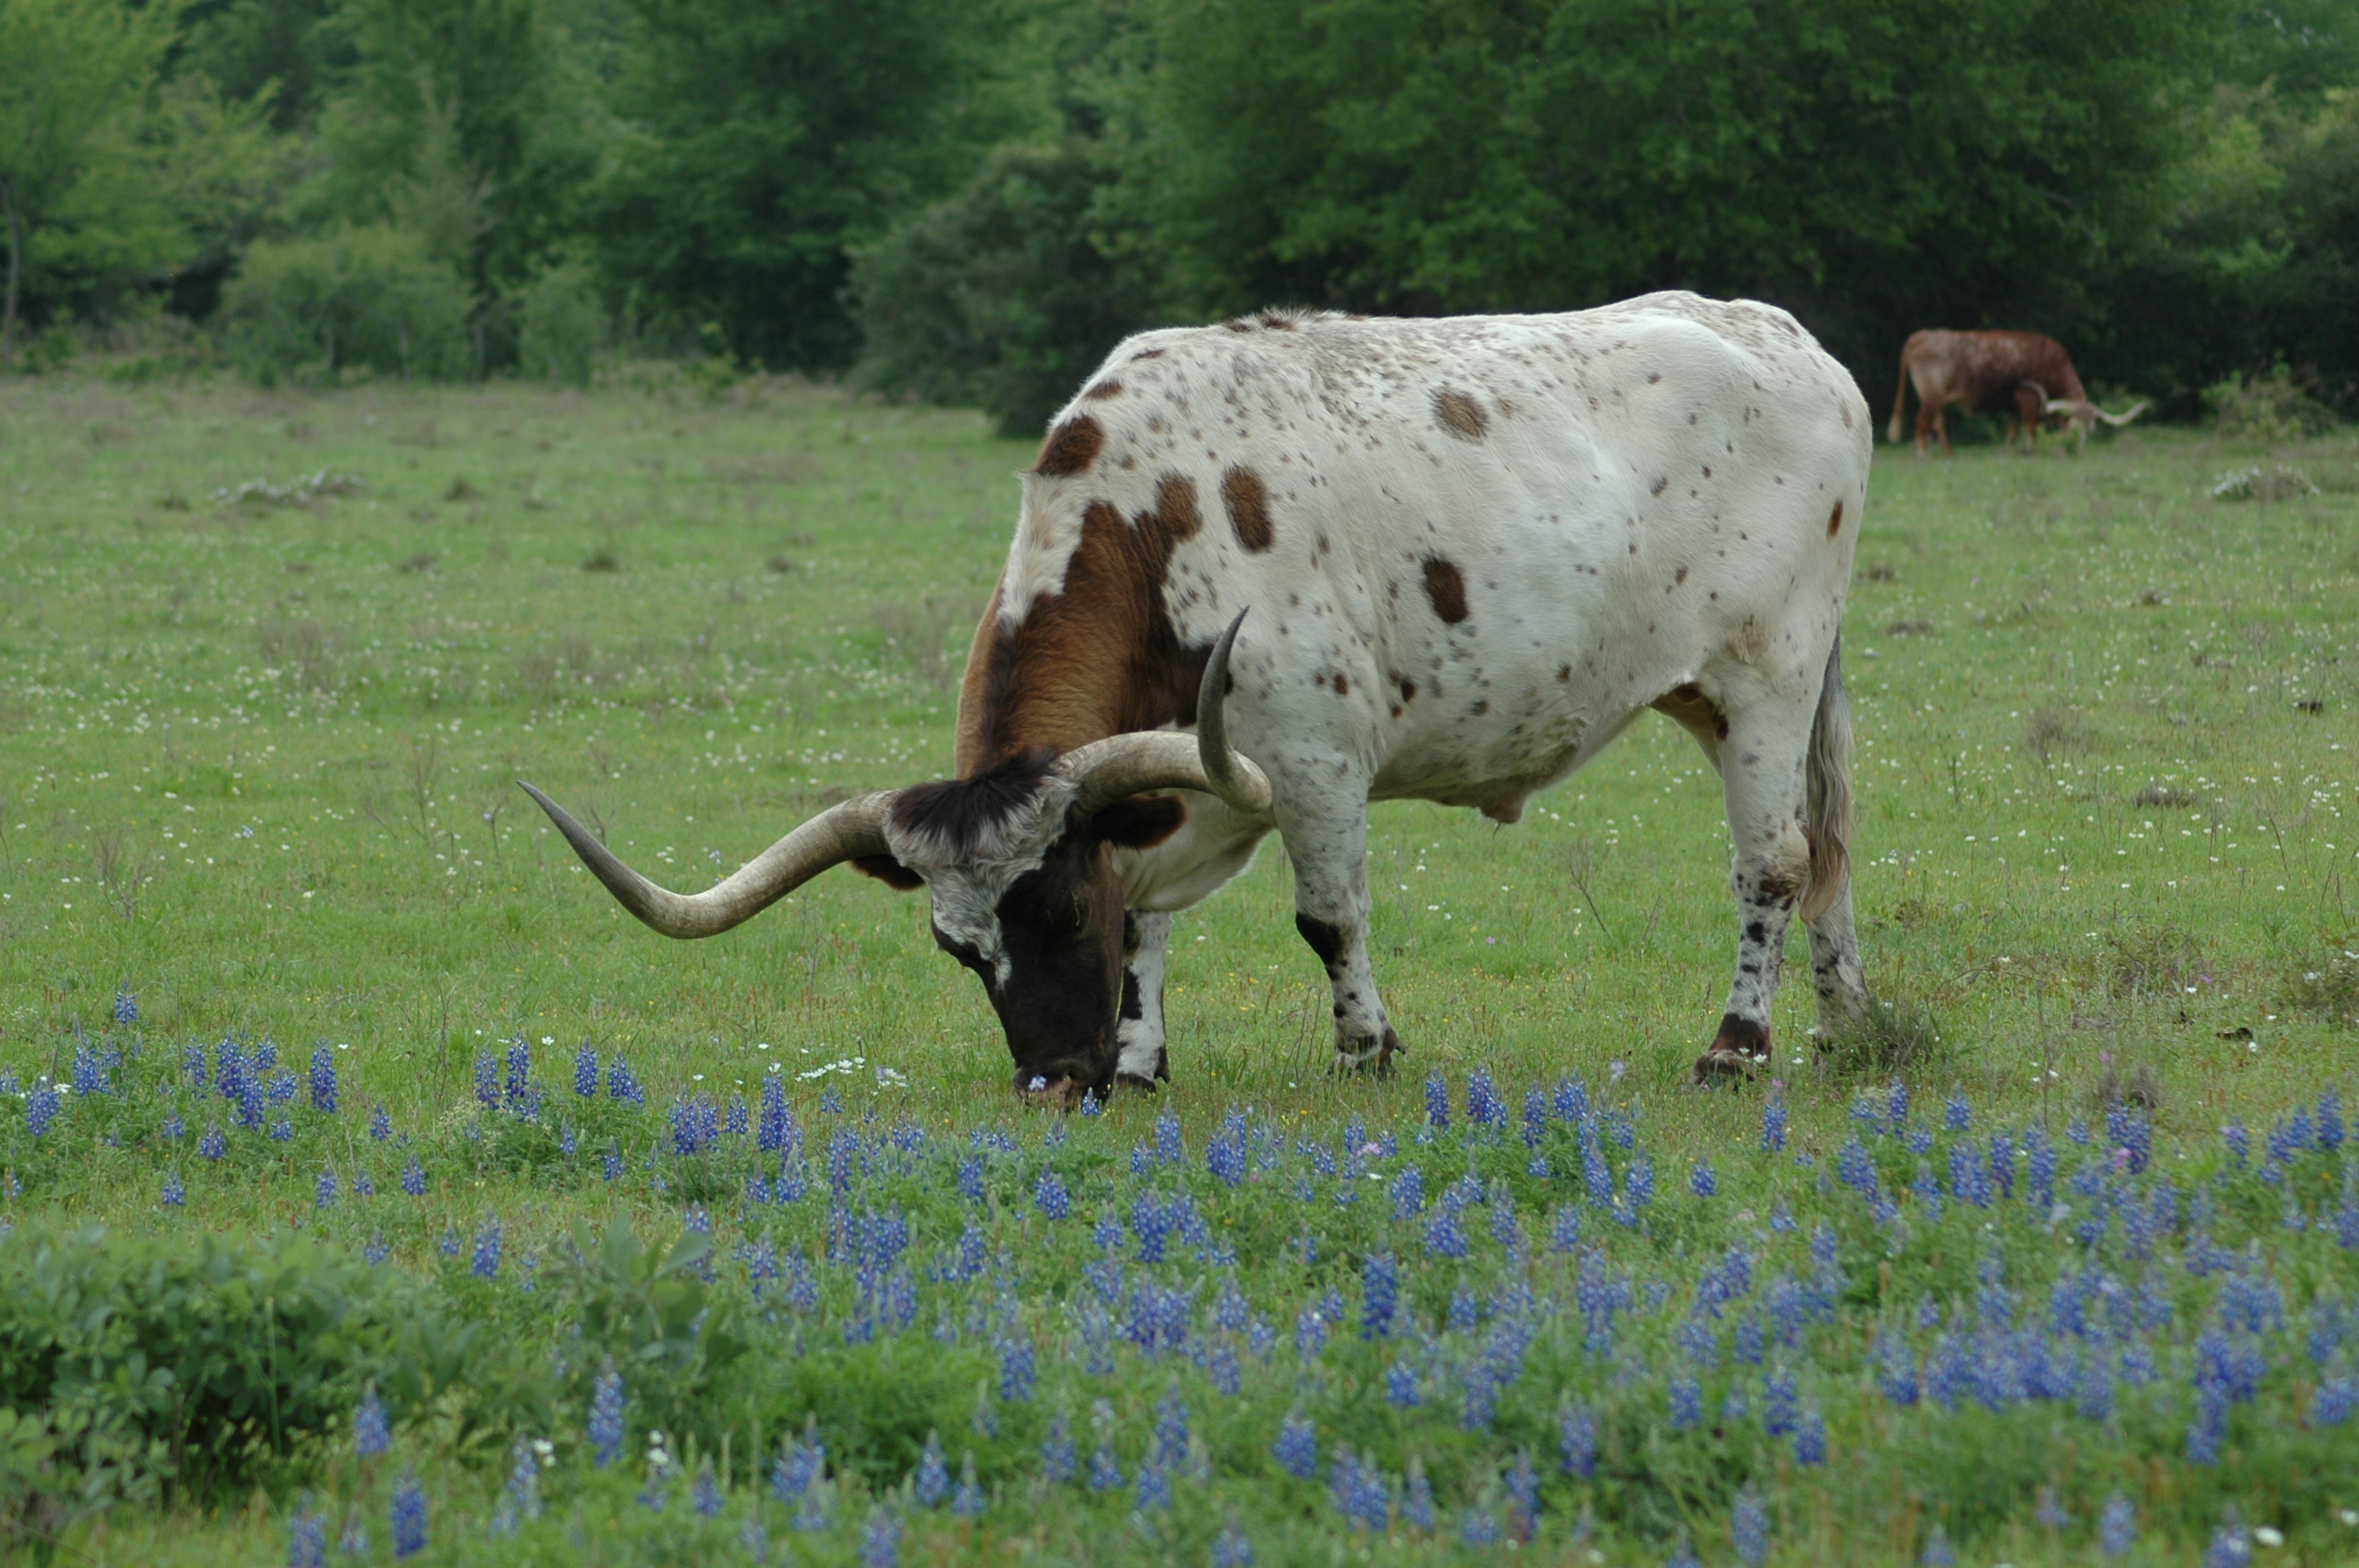 Cow in a field of bluebonnets